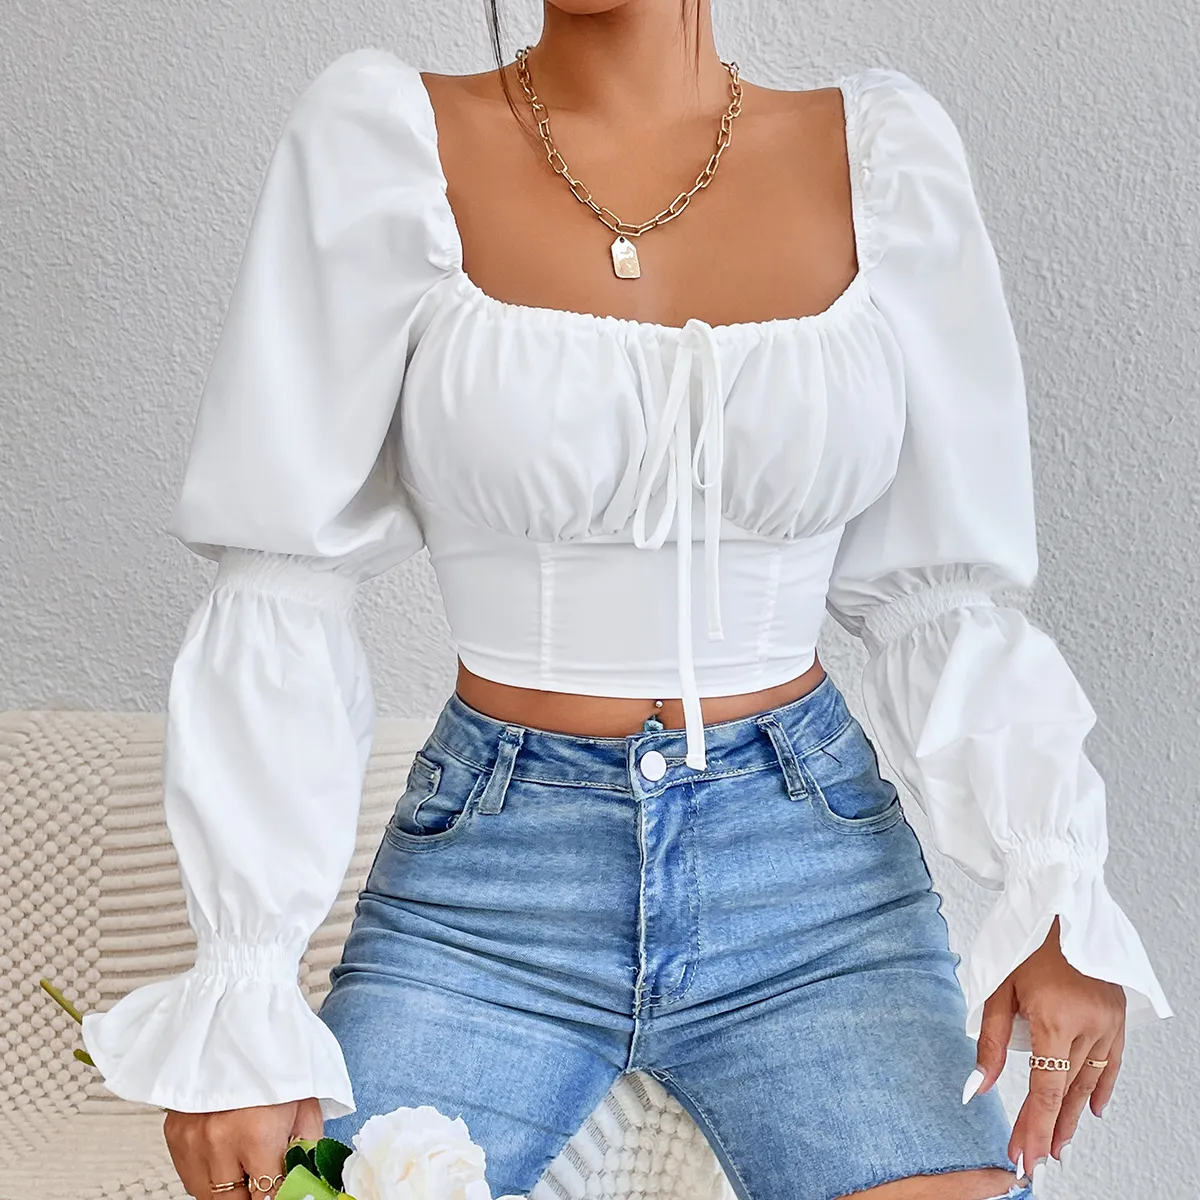 कस्टम कैजुअल शर्ट लंबी आस्तीन शिफॉन सफेद कॉर्सेट फसल शीर्ष सेक्सी और महिलाओं के लिए शर्ट